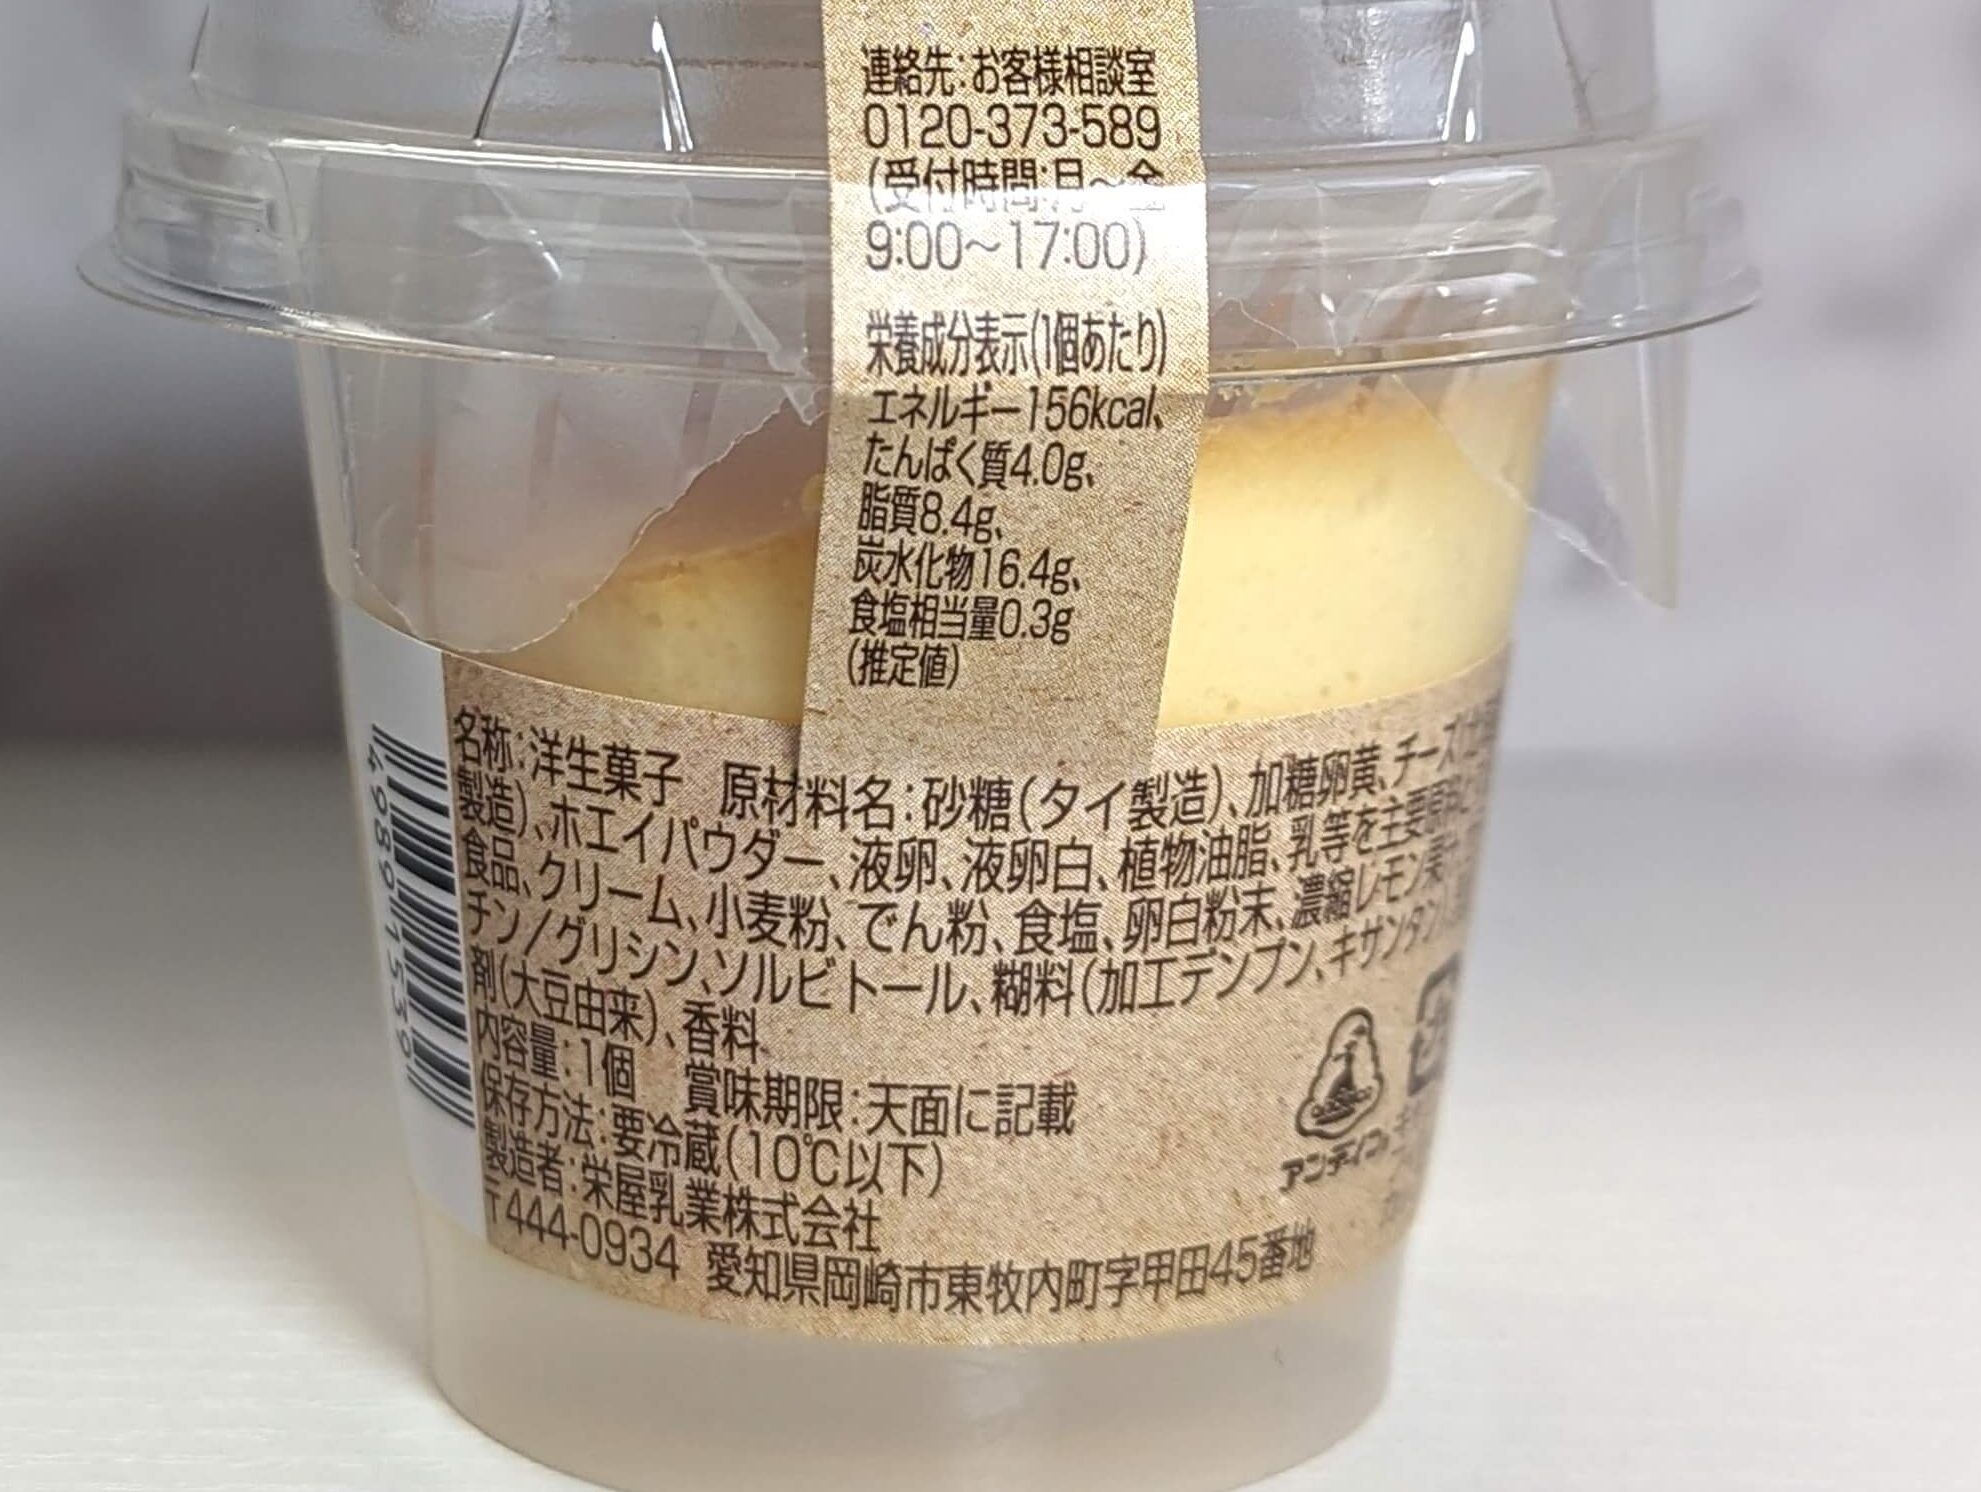 セブンイレブン「北海道とろけるチーズケーキ」 (4)